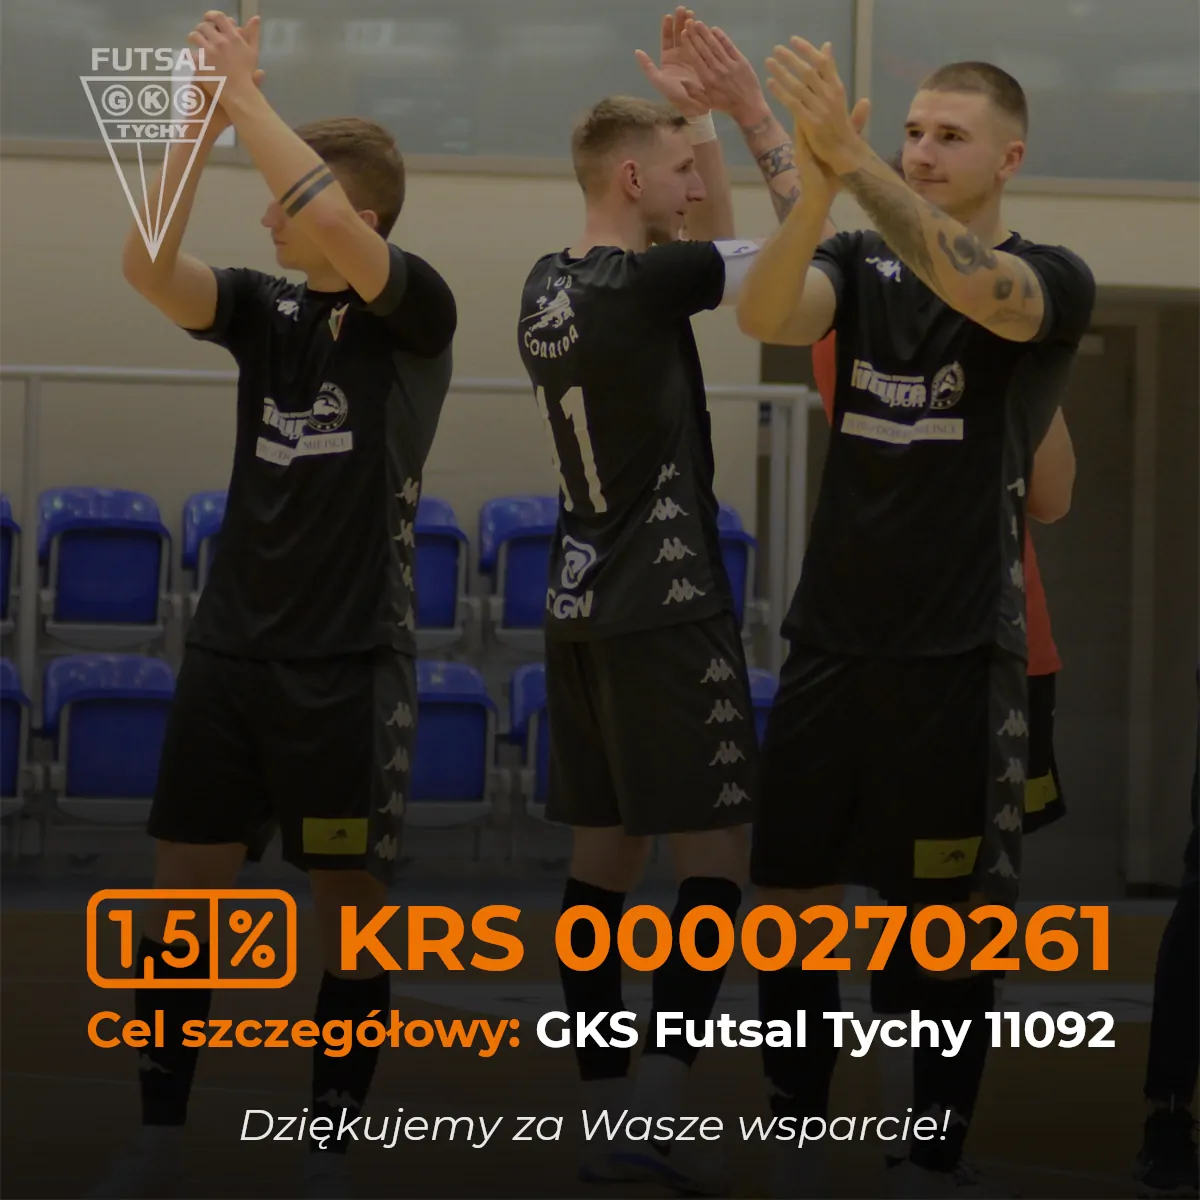 Przekaż 1,5% GKS Futsal Tychy